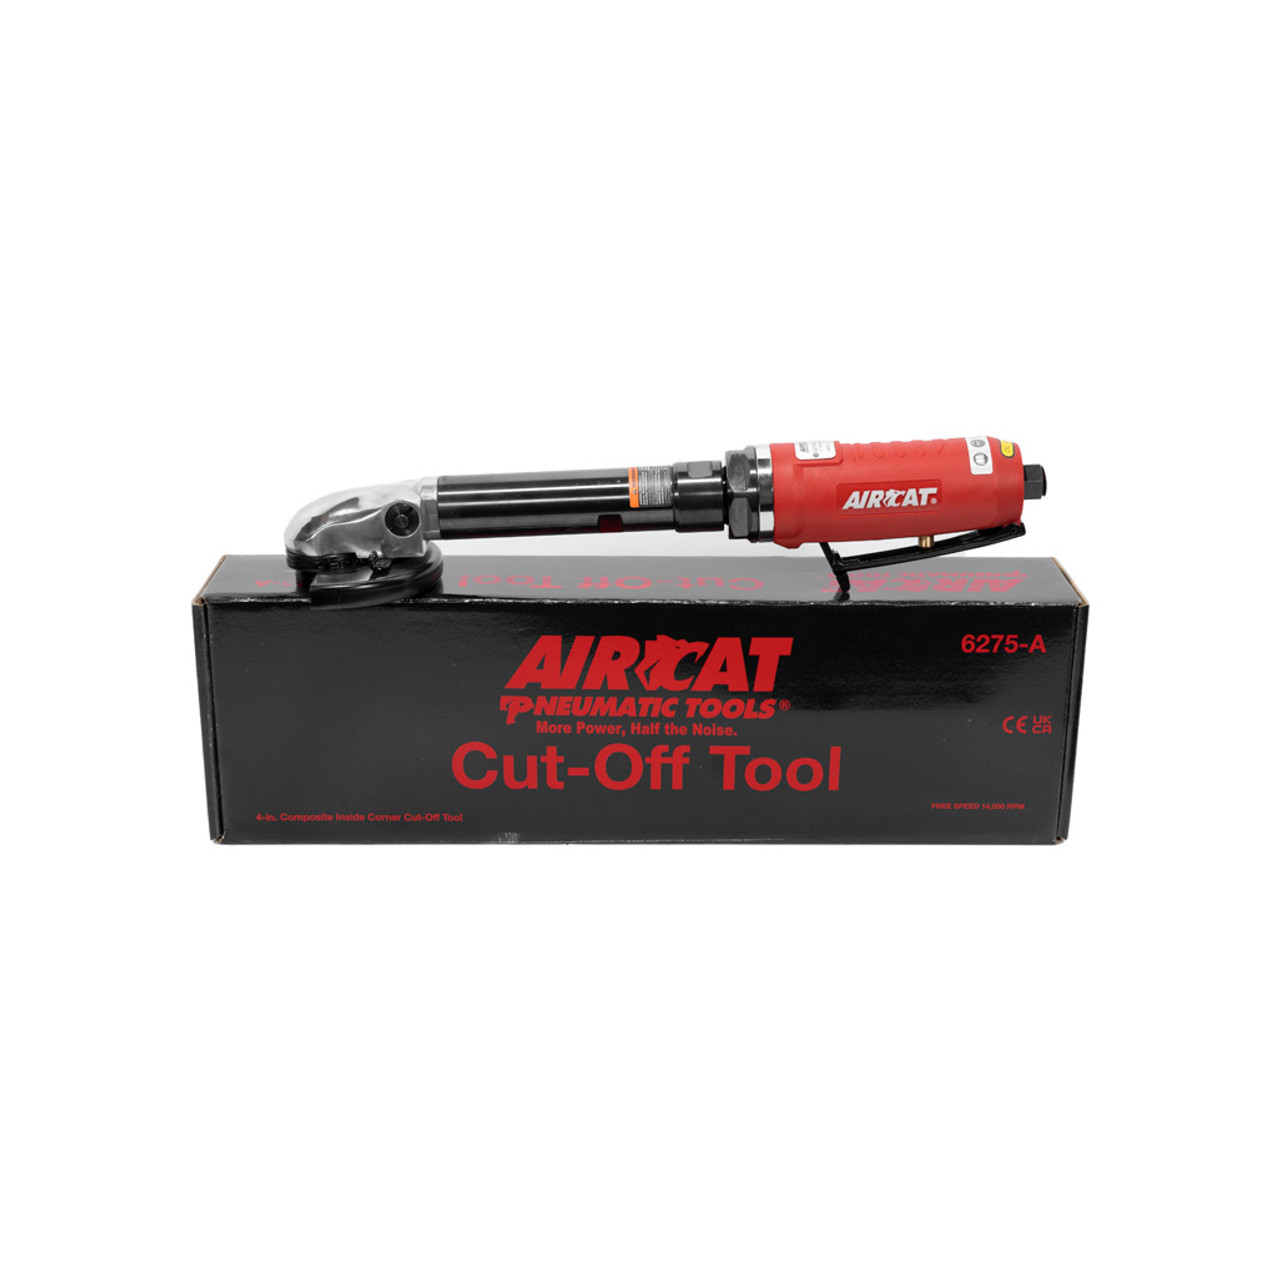 Aircat Cut-Off Tool 4